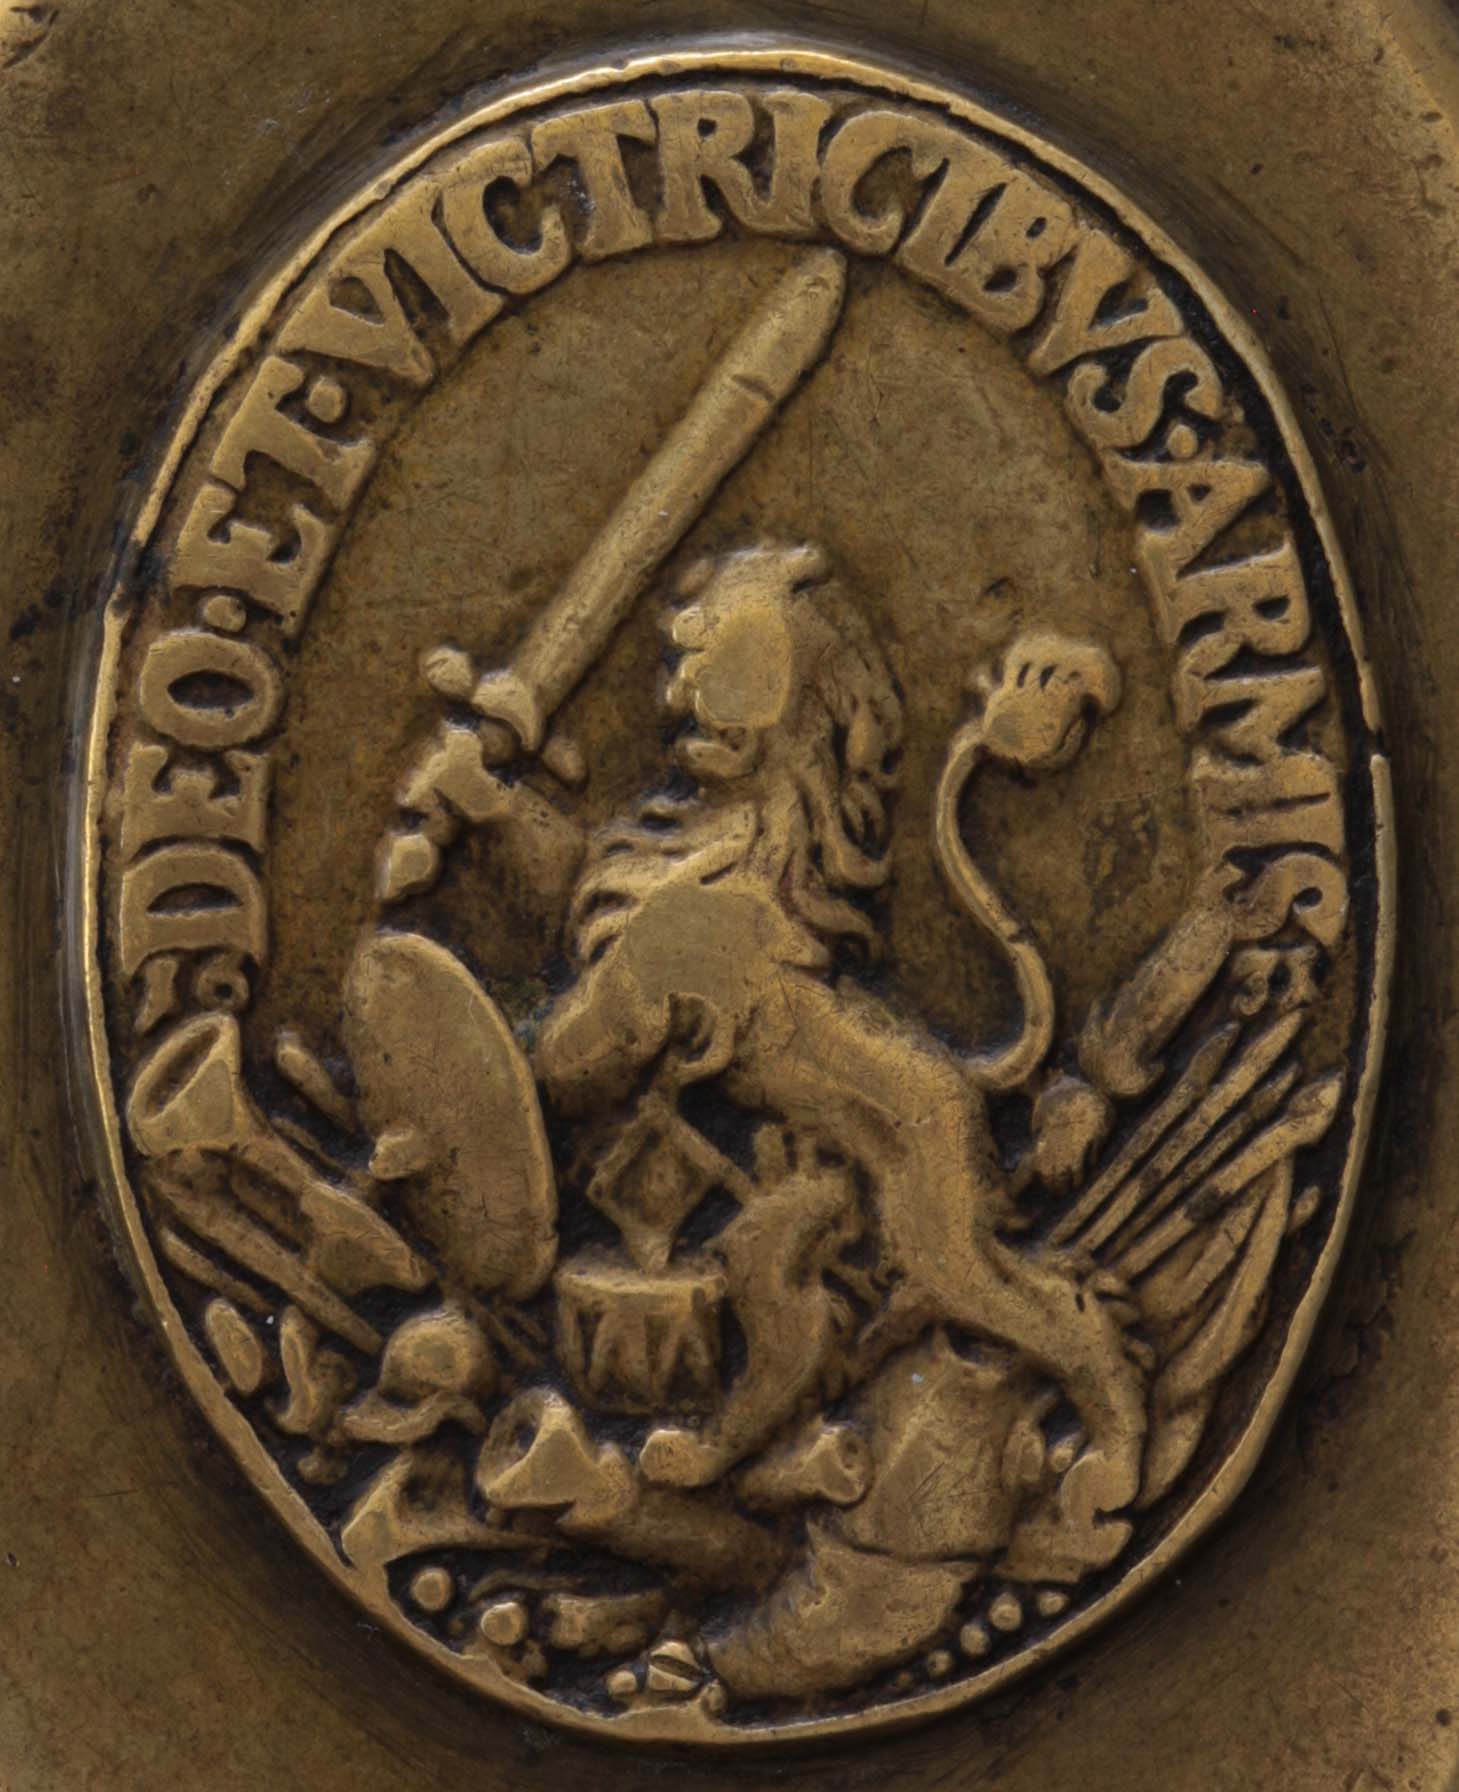 03-03.262-tobaccobox-sweden-1631-coin